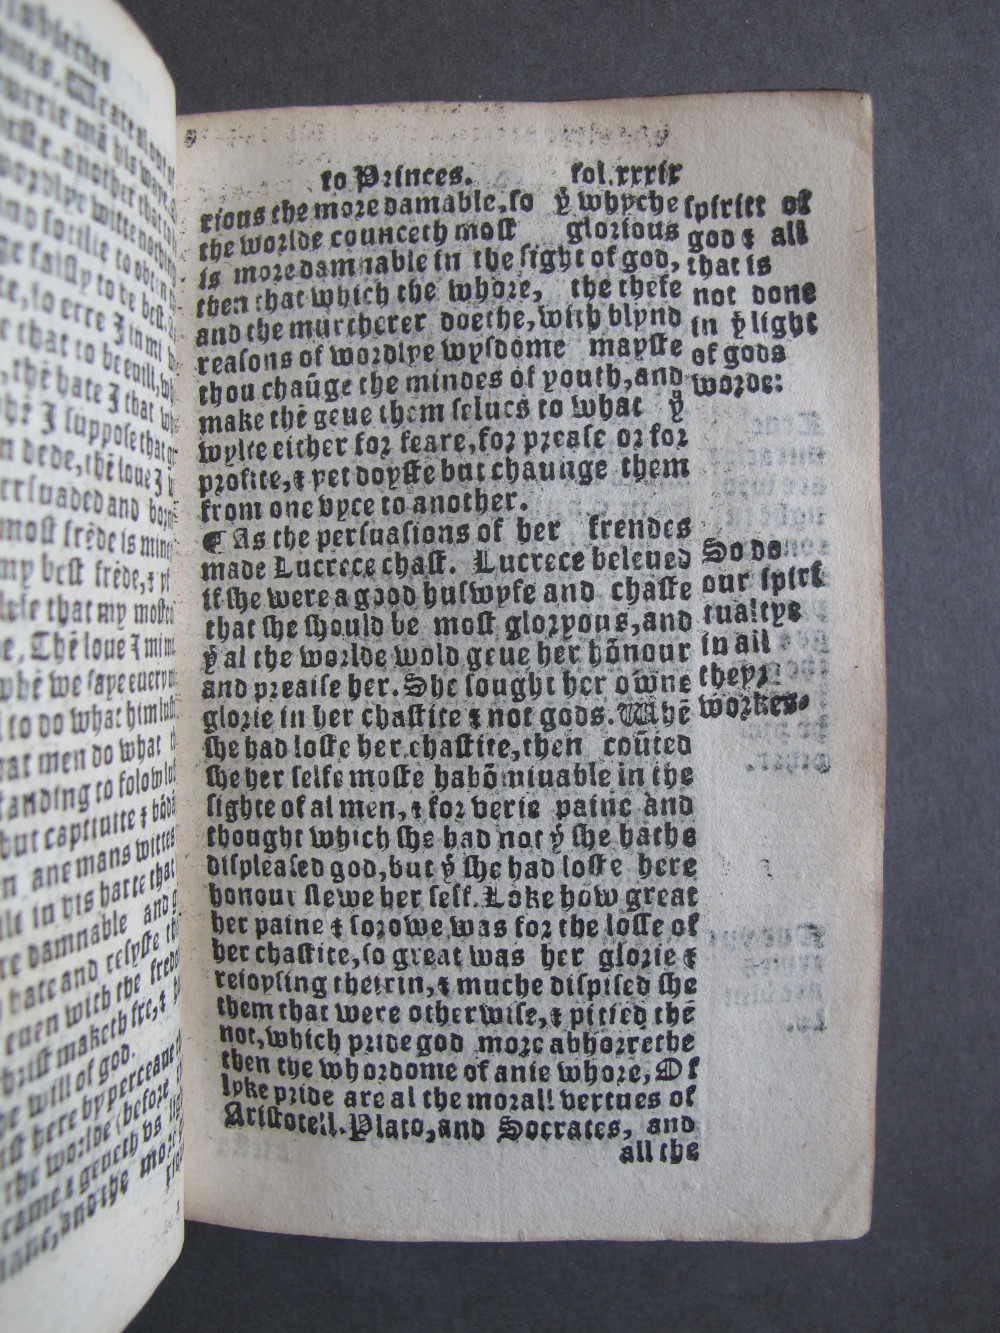 1 Folio E7 recto